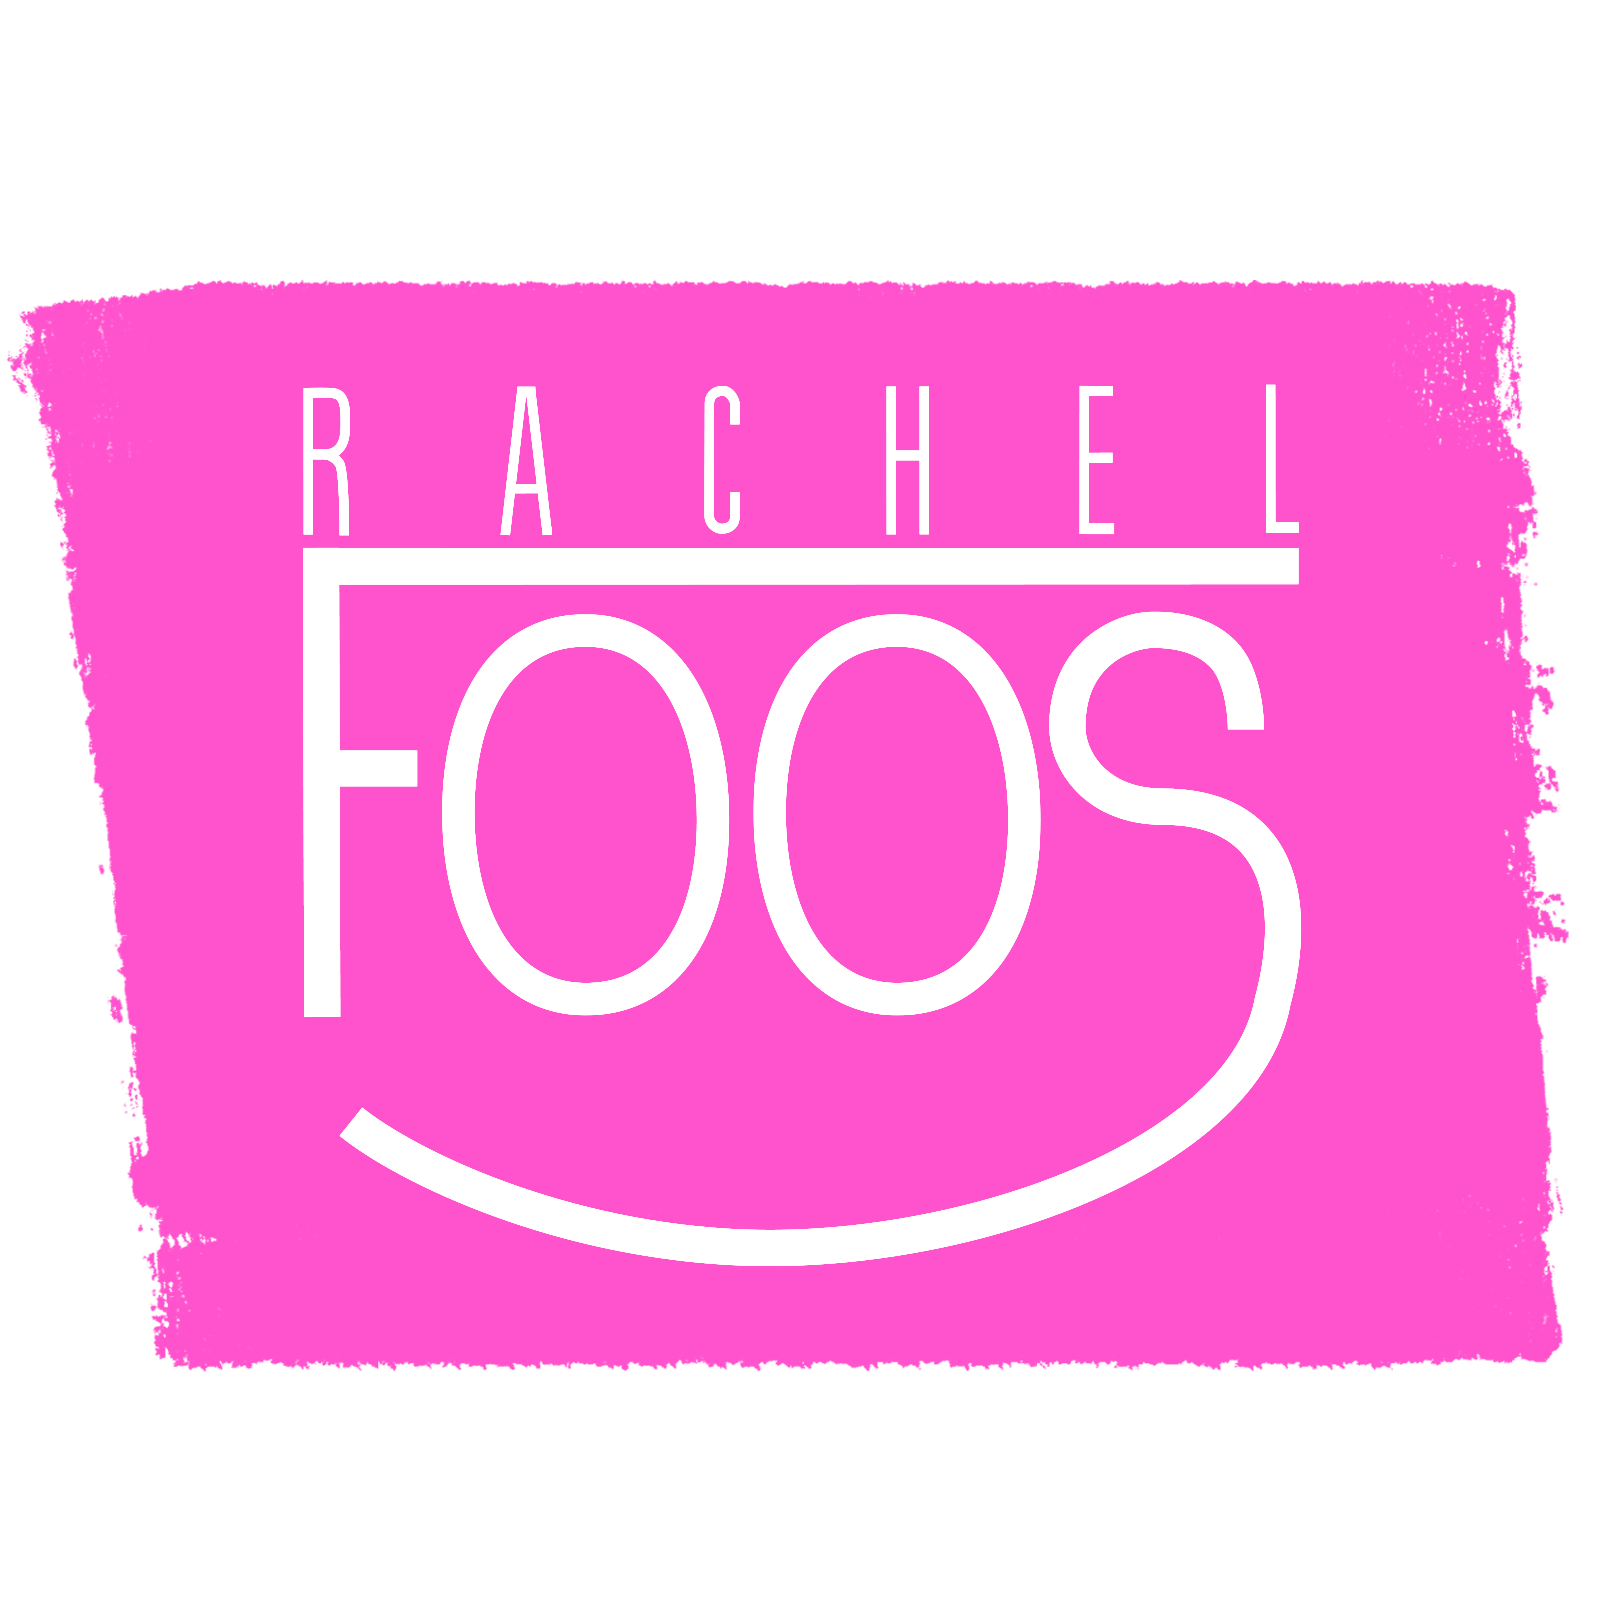 Rachel Foos